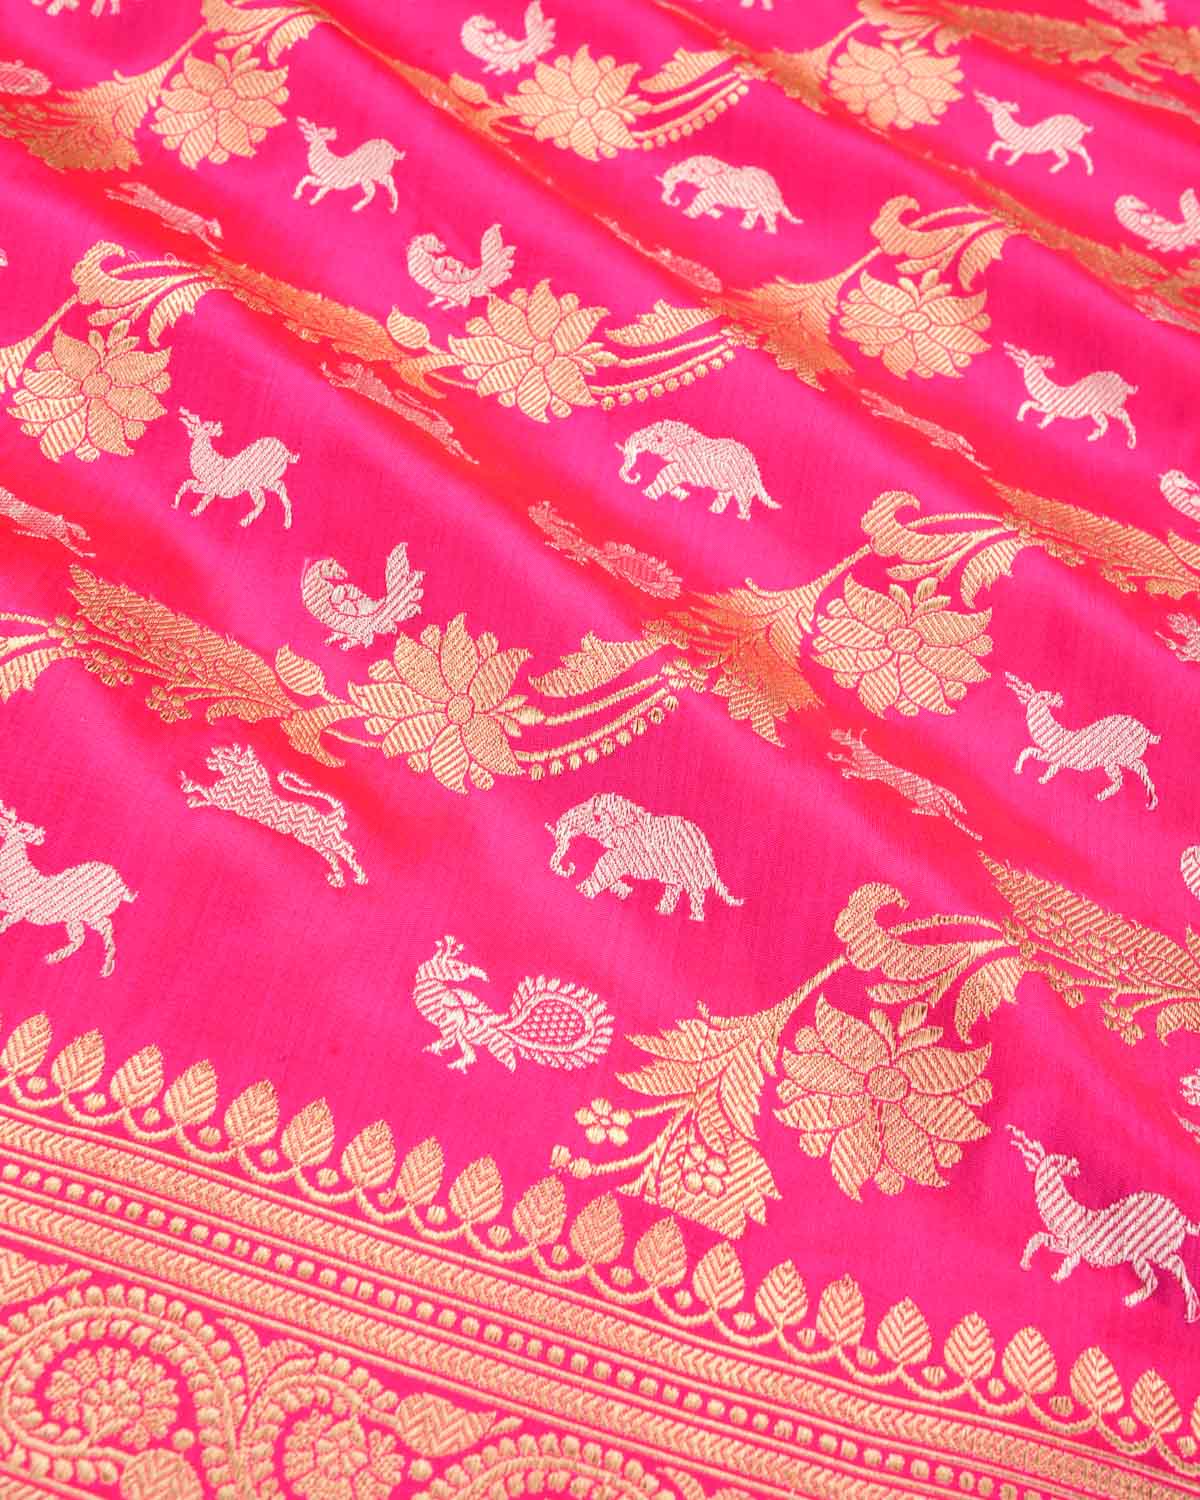 Shot Red-Pink Banarasi Gold Zari Floral Diagonal Aada Kadhuan Brocade Handwoven Katan Silk Saree with Silver Zari Elephant Peacock Parrot Deer & Lion - By HolyWeaves, Benares